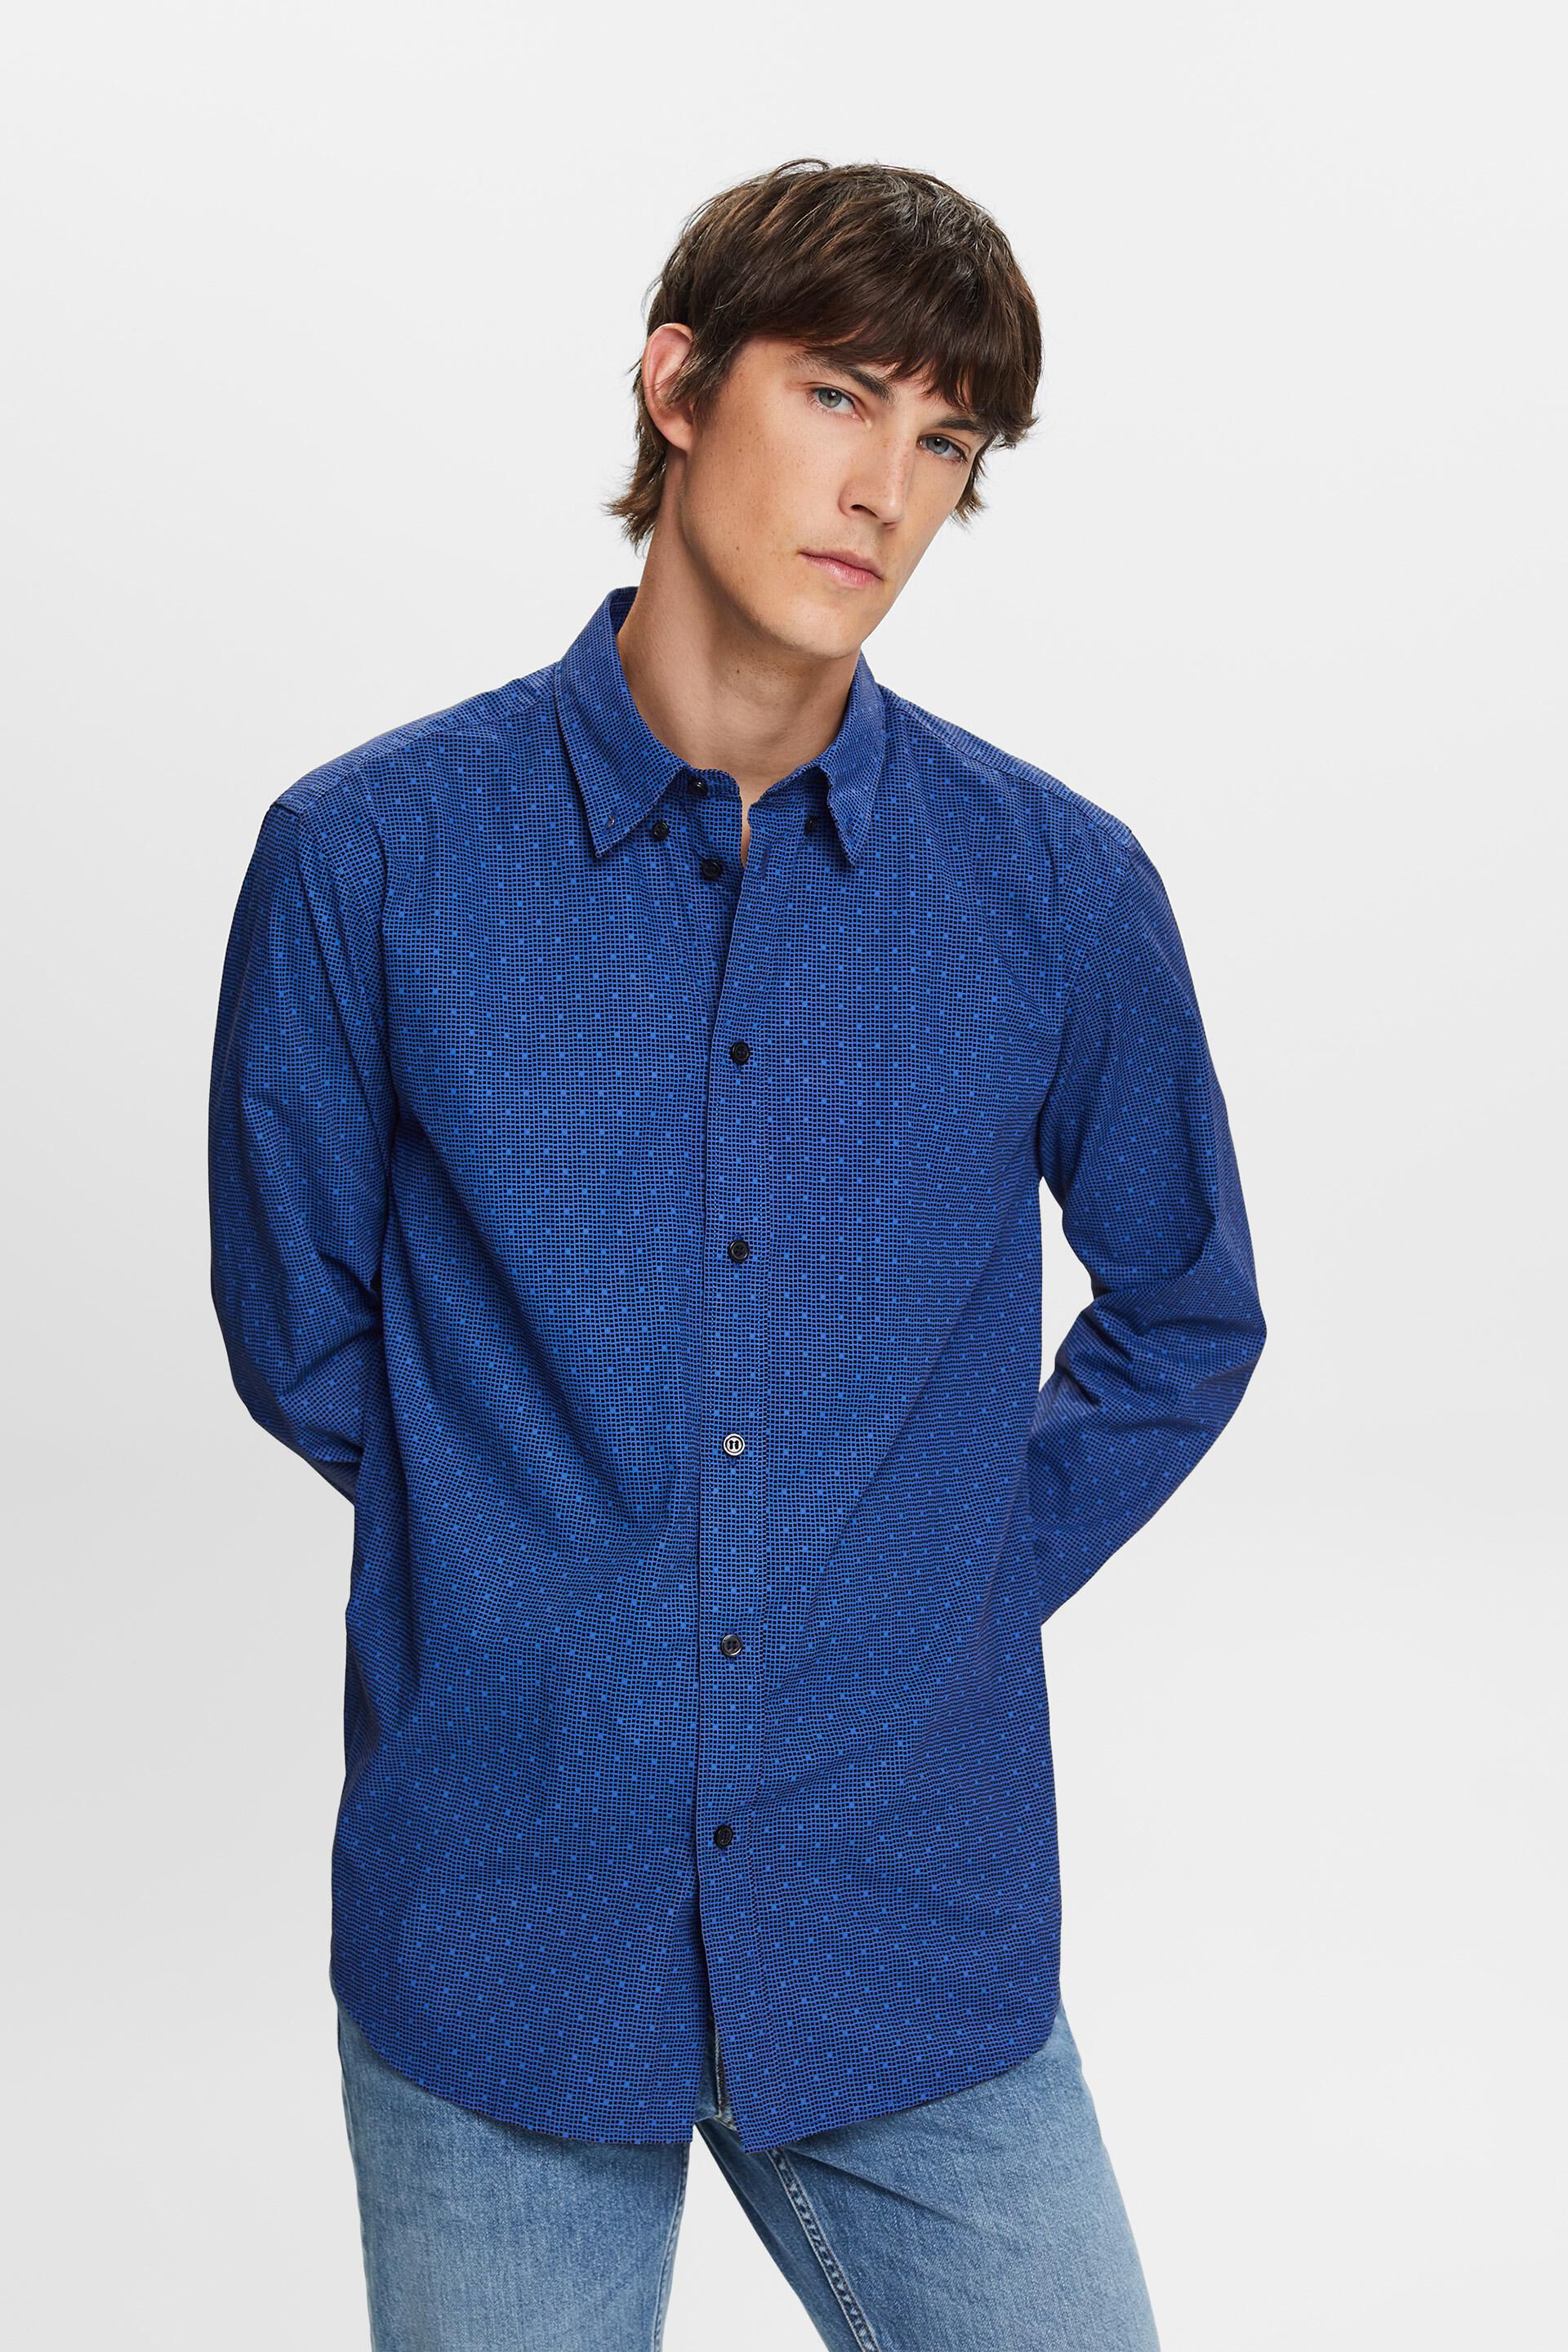 Esprit 100% shirt, button-down cotton Patterned